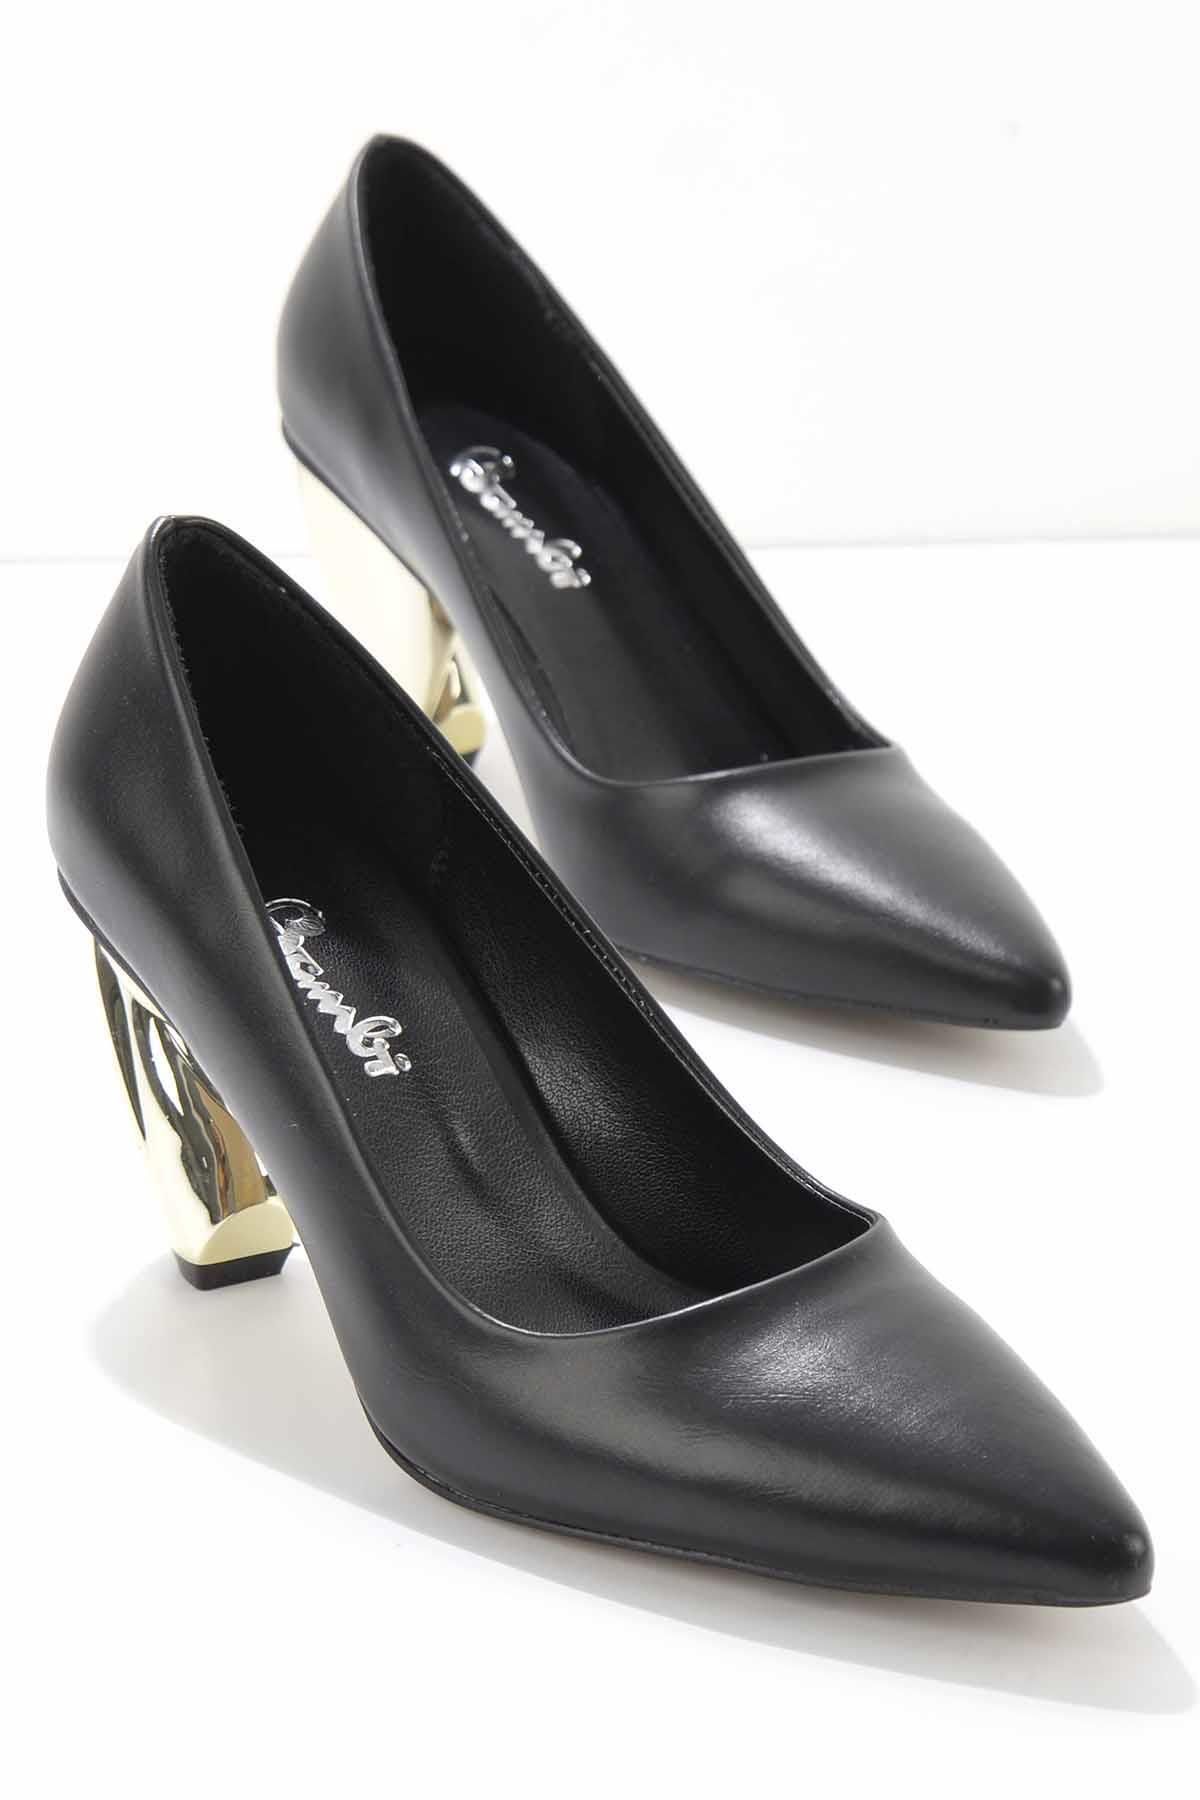 Bambi Siyah Kadın Klasik Topuklu Ayakkabı K01211570109